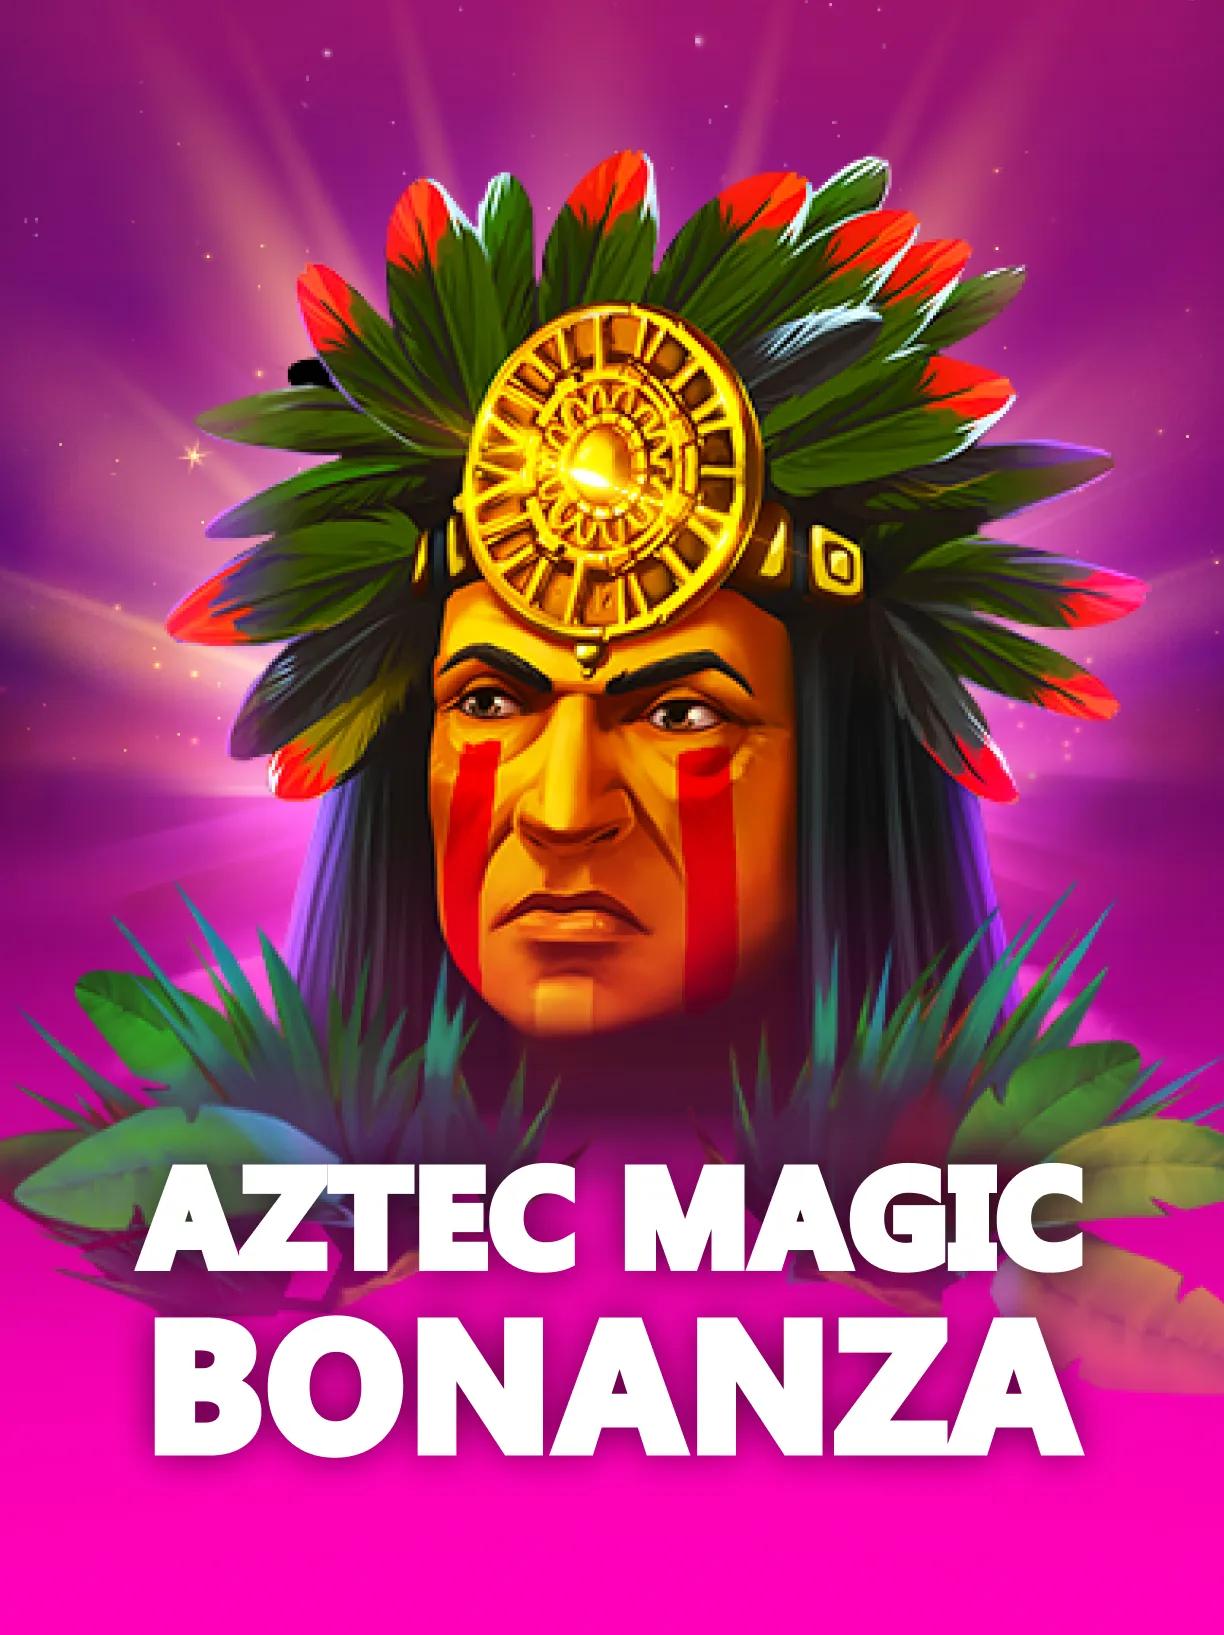 Aztec_Magic_Bonanza_square.webp